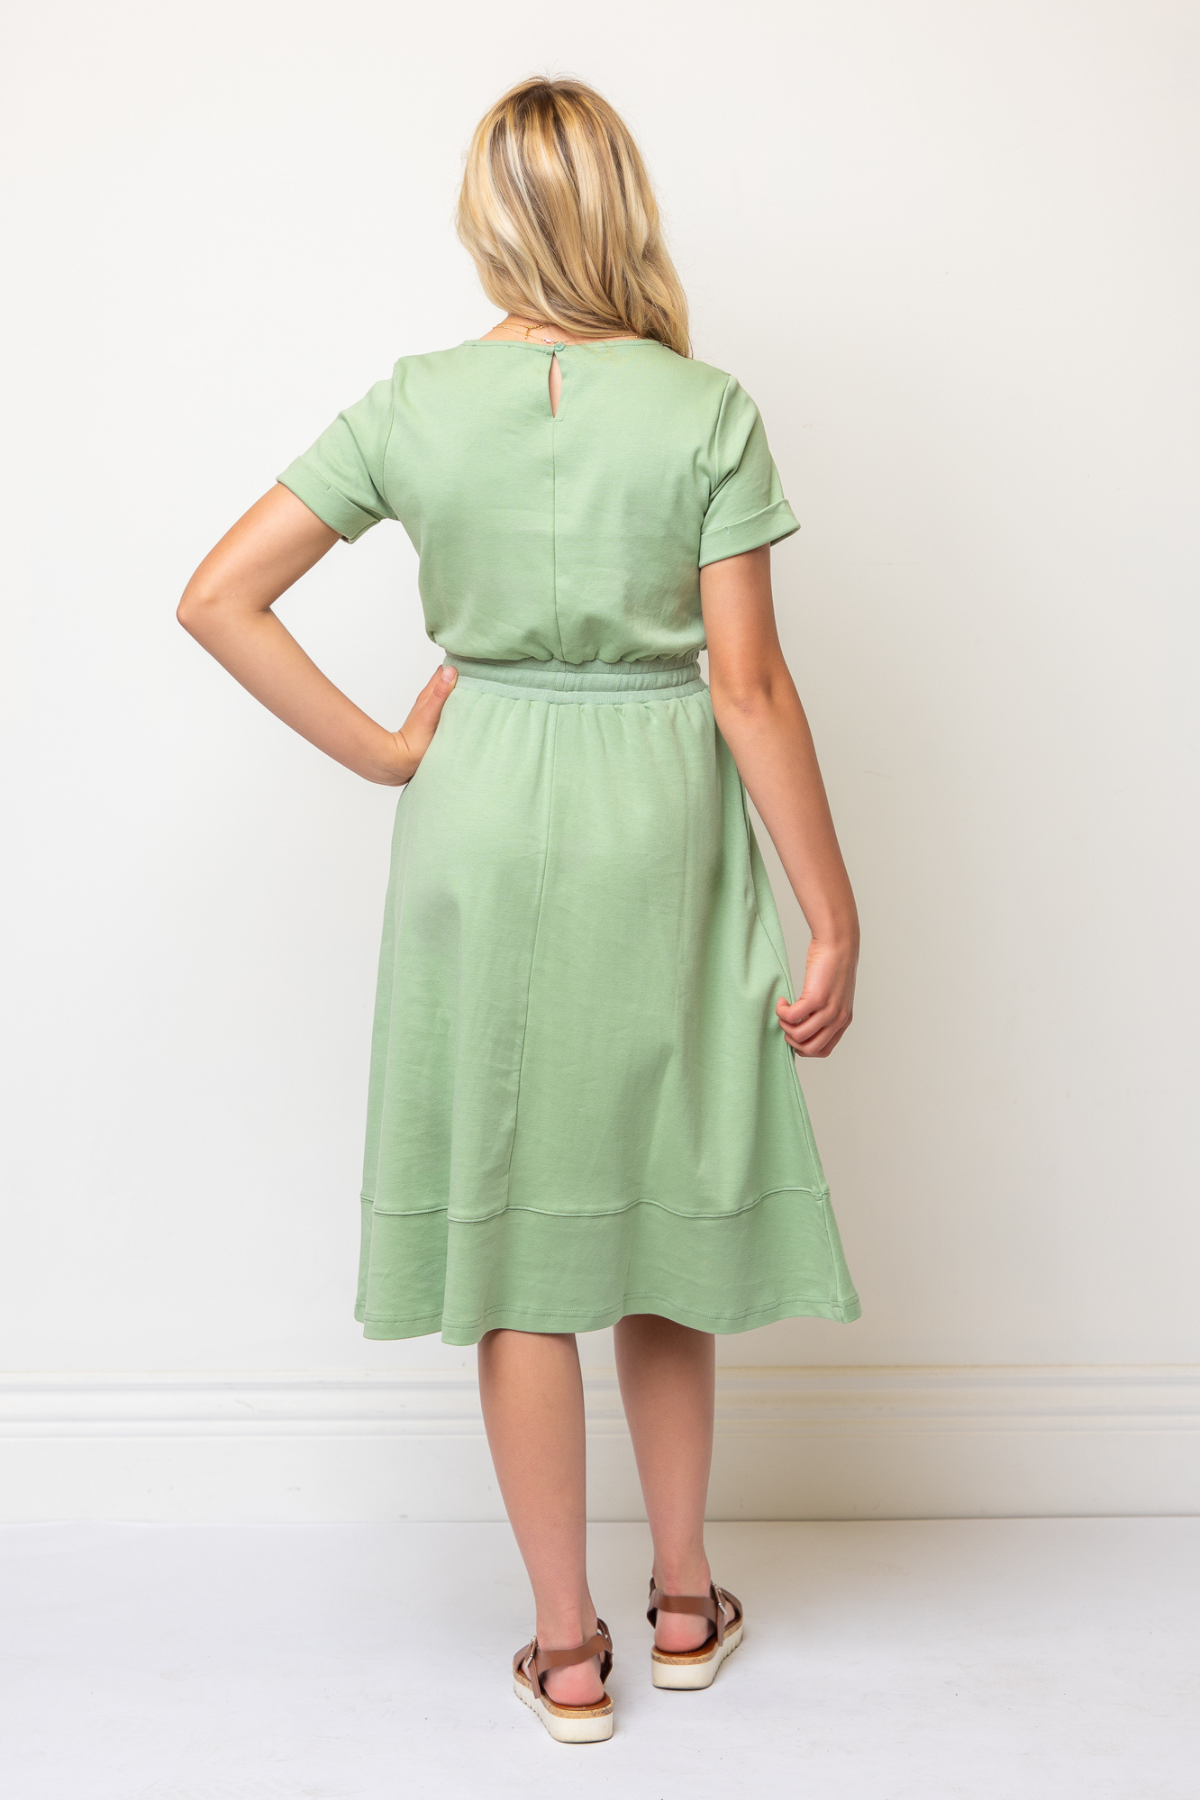 Marie Knit Dress in Green